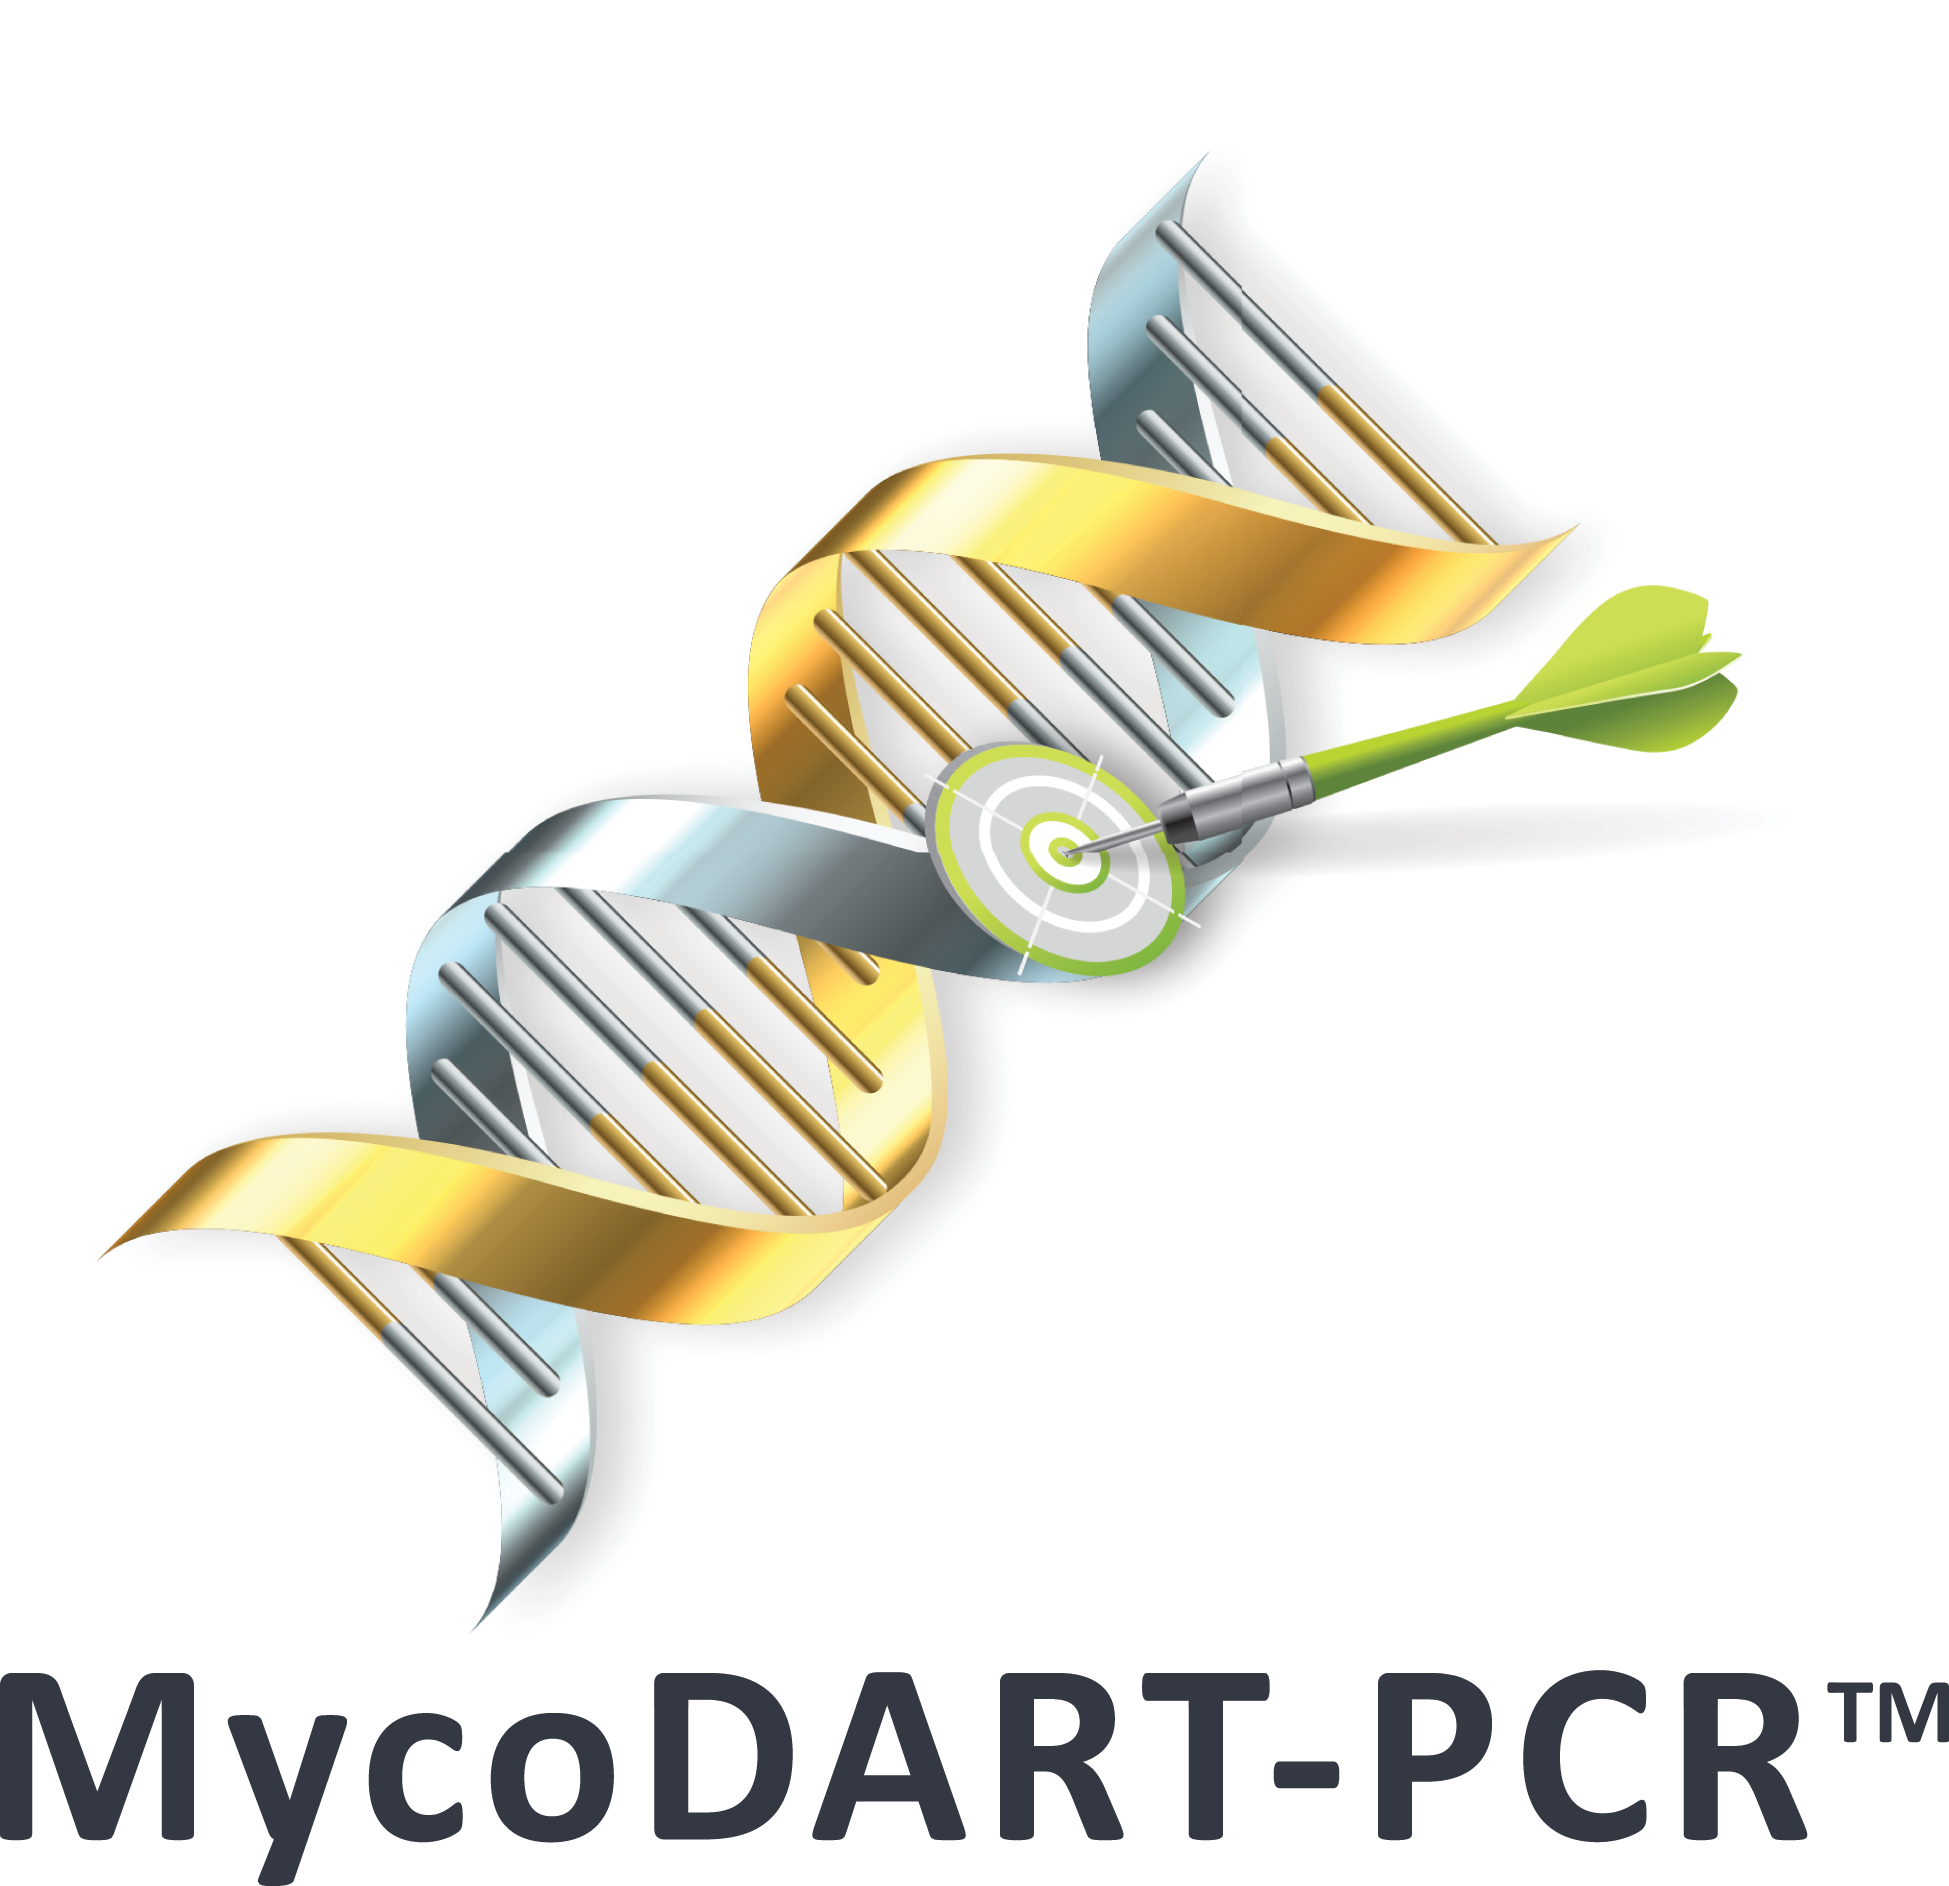 MycoDART